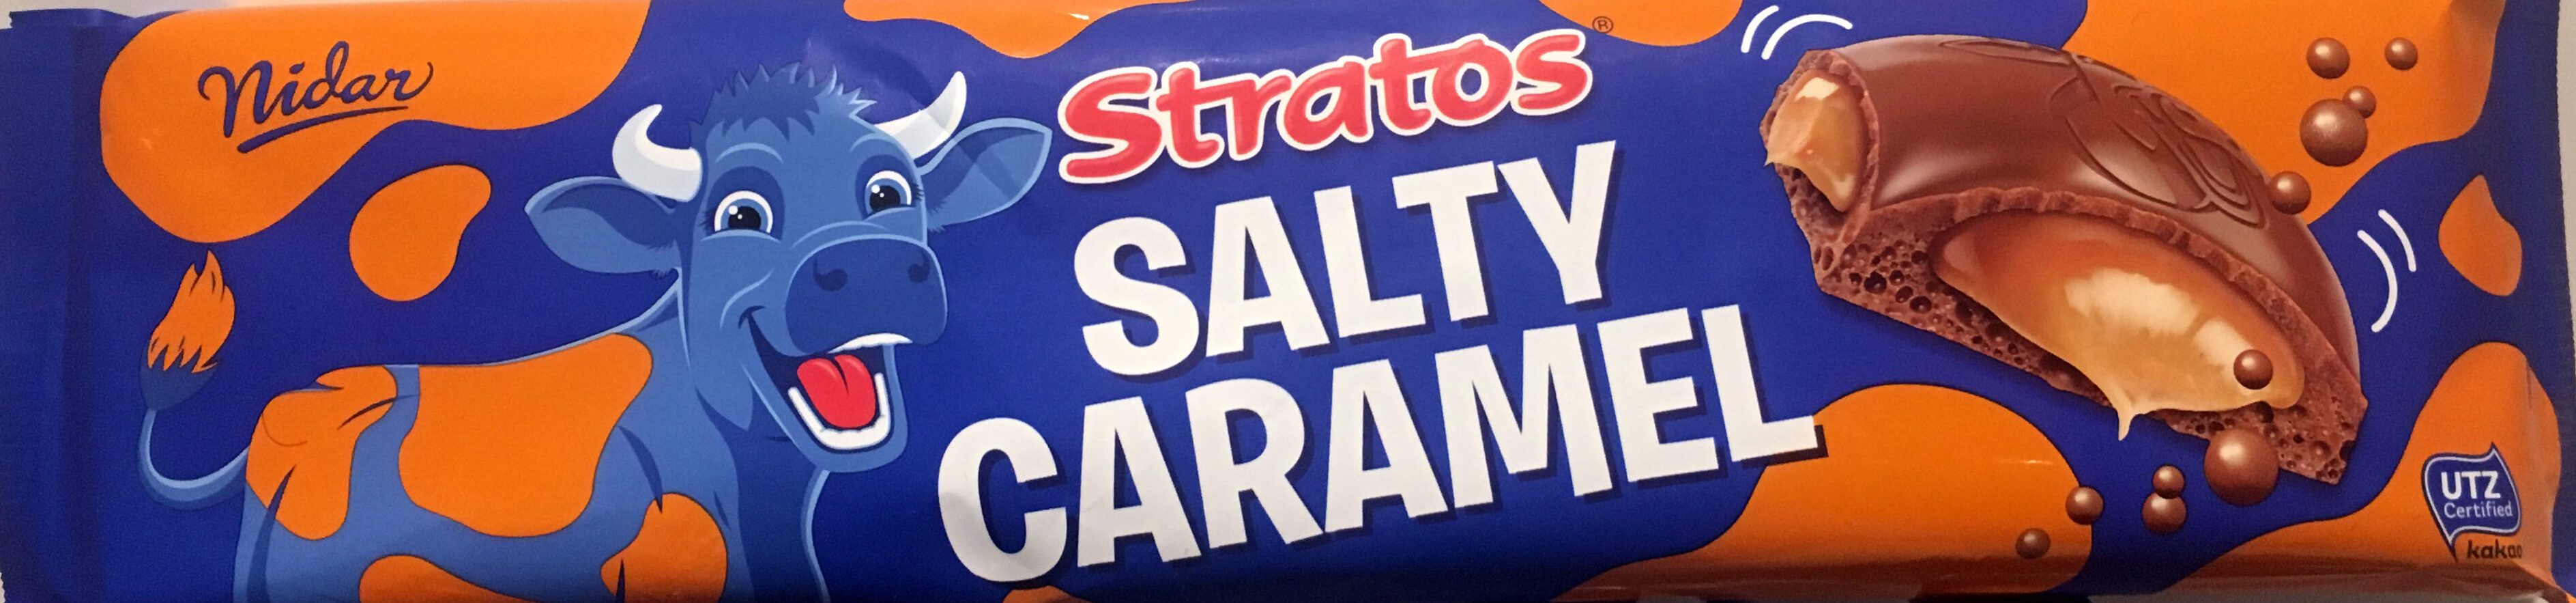 Stratos Salty Caramel - Produkt